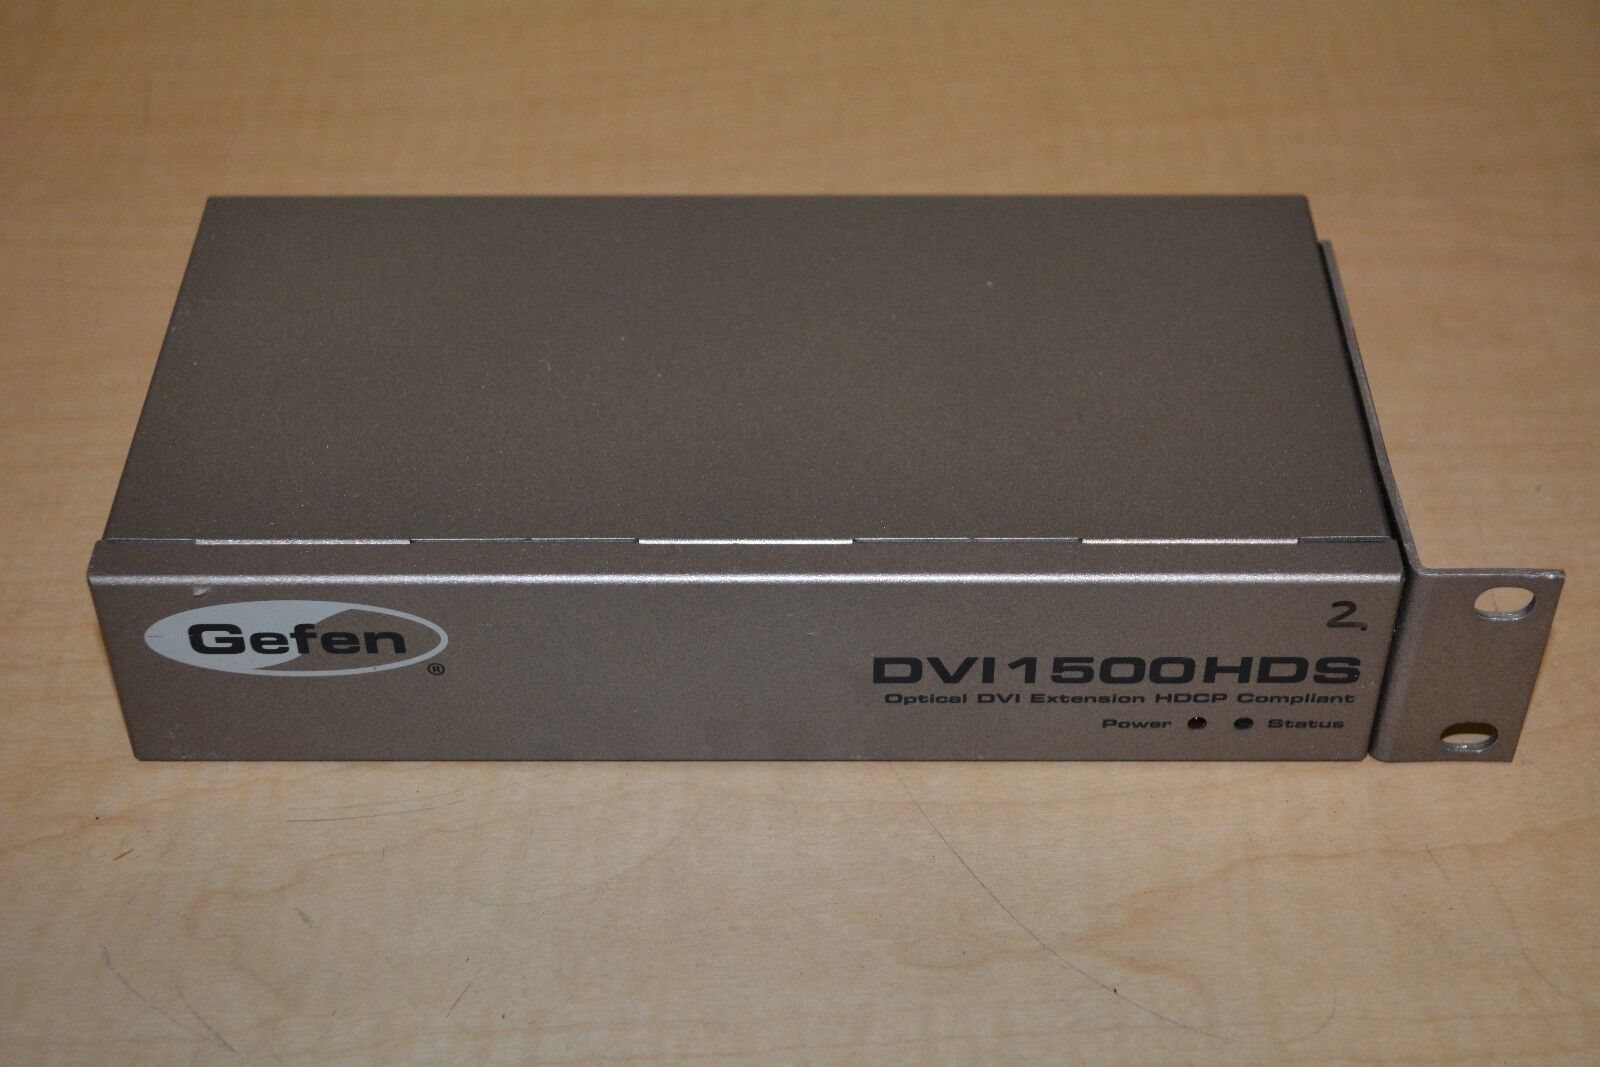 Gefen DVI 1500 HDS Optical DVI Extension HDCP Compliant